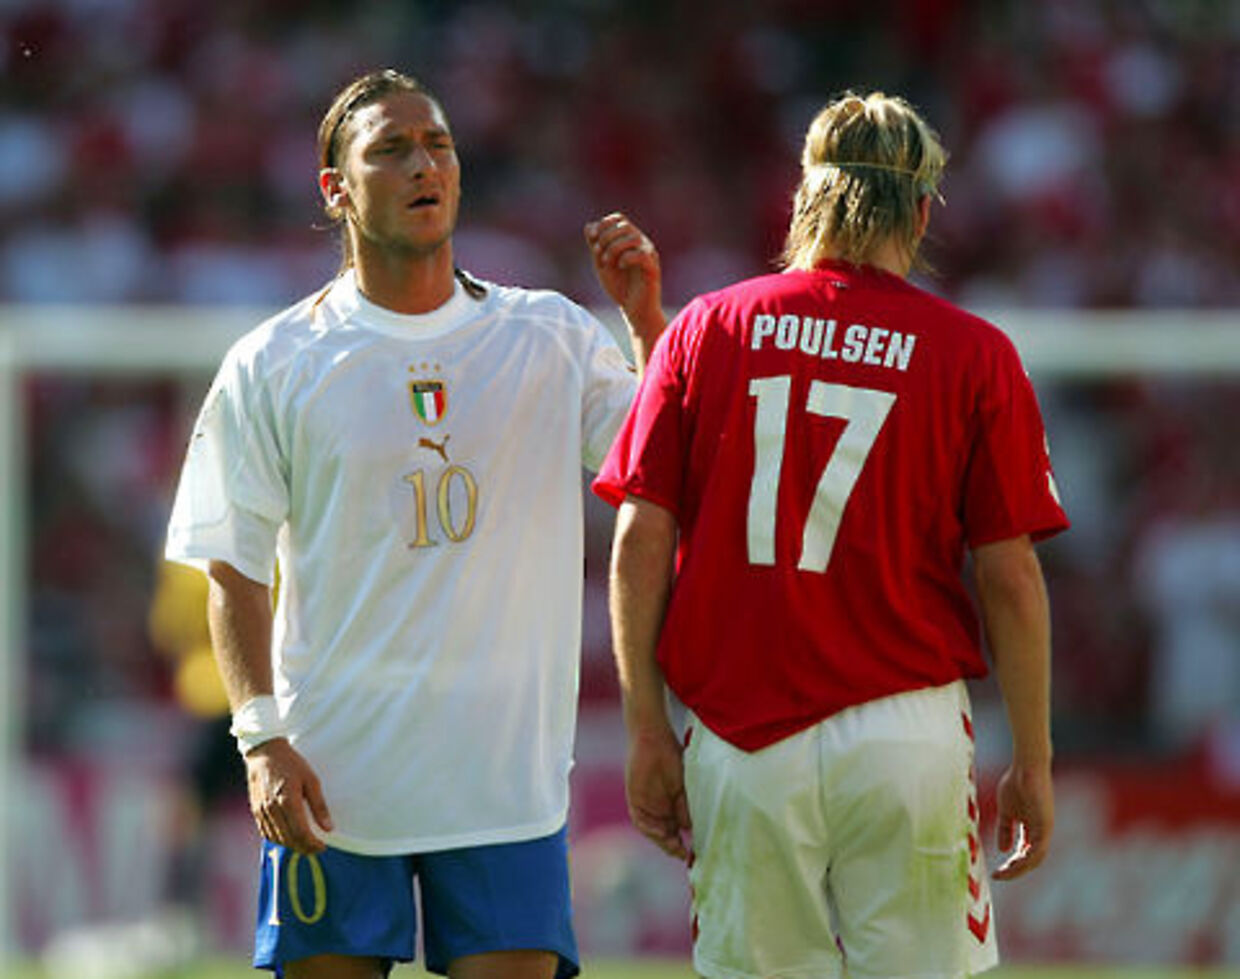 Totti nægter at tilgive Poulsen | BT Fodbold - www.bt.dk